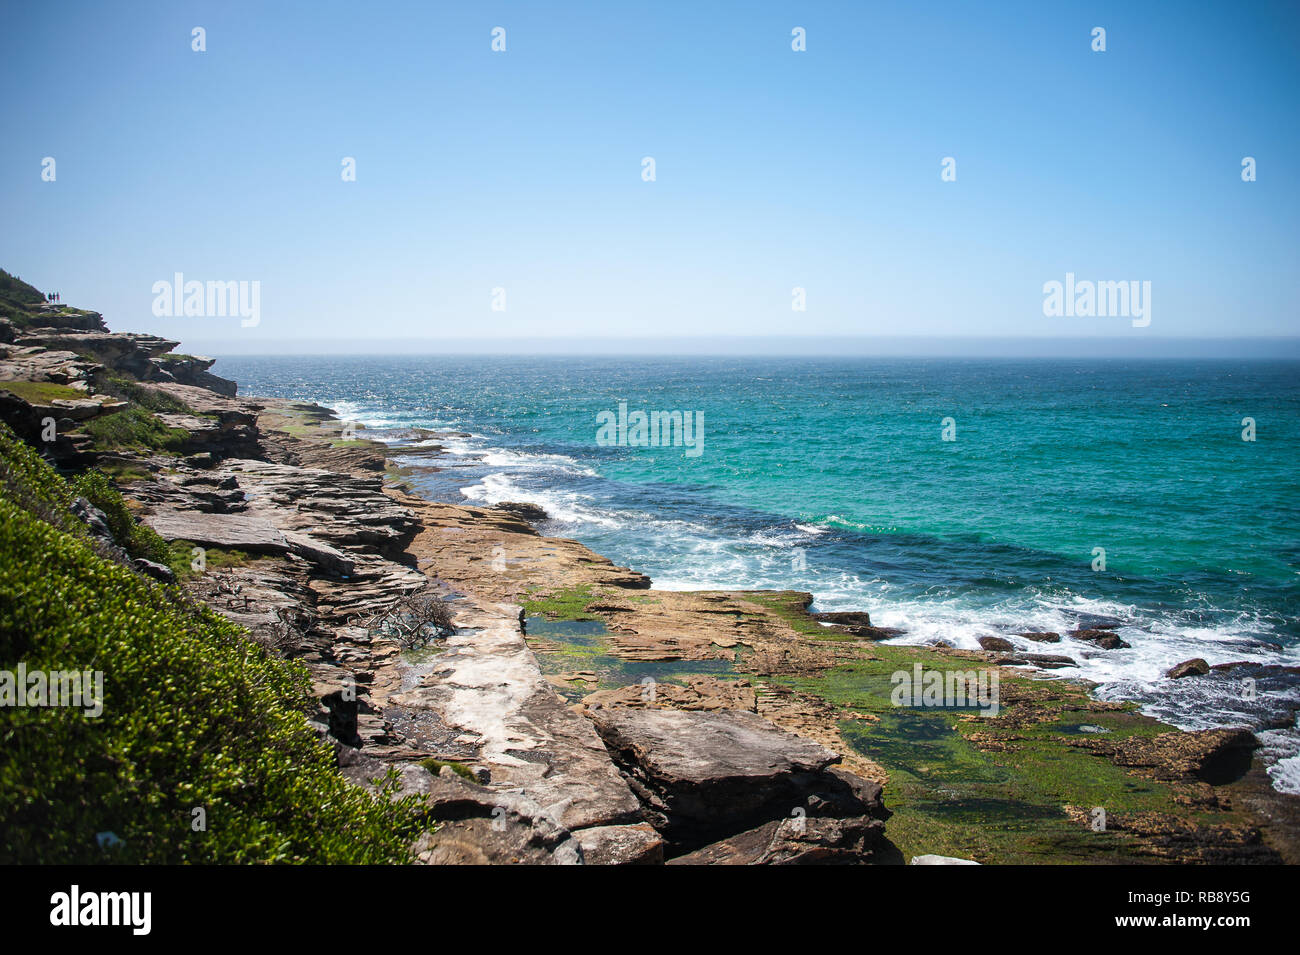 Scène côtière, Sydney, Nouvelle-Galles du Sud, Australie. Clourful rock formations causés par l'érosion du vent et de la mer. Banque D'Images